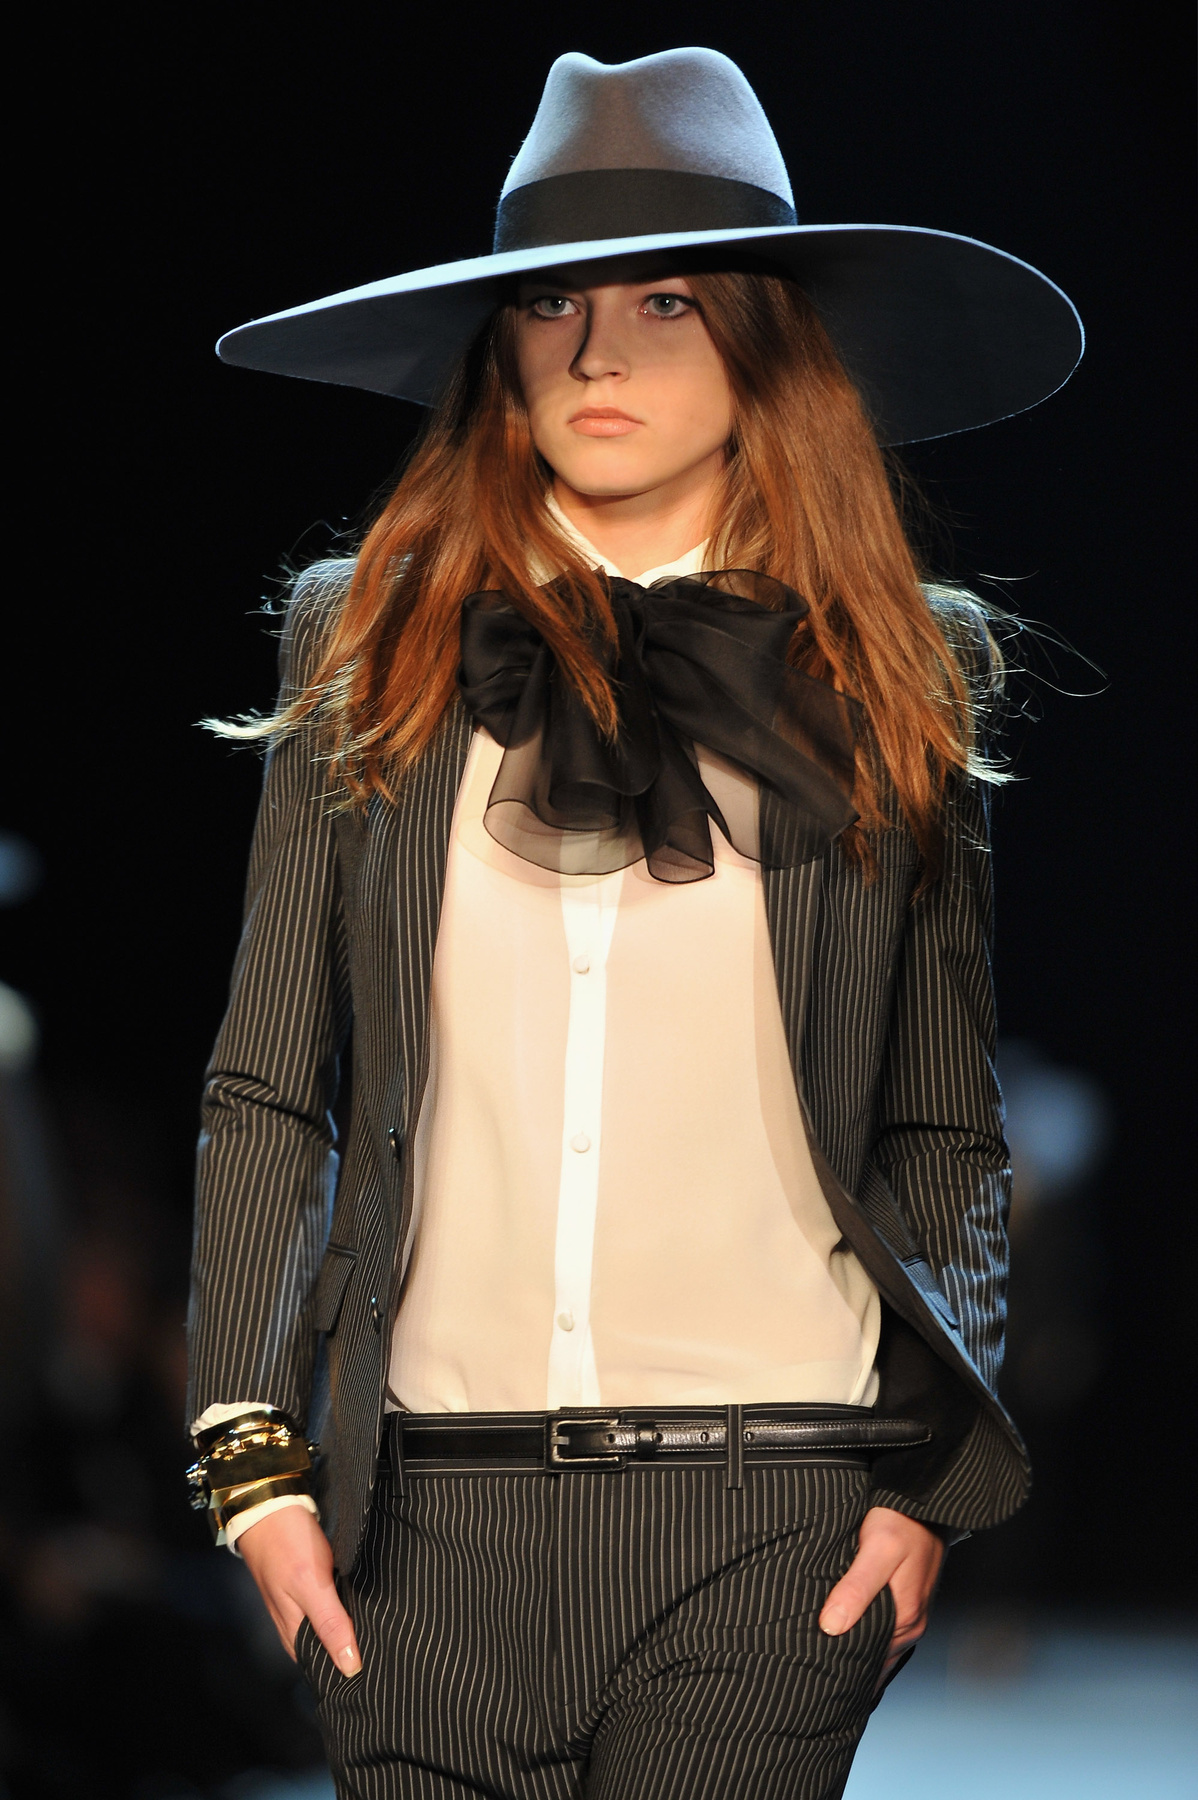 Gisele Bündchent Karl Lagerfeld kapta lencsevégre csíkosban a Chanel 2015-ös tavaszi-nyári kampányába.